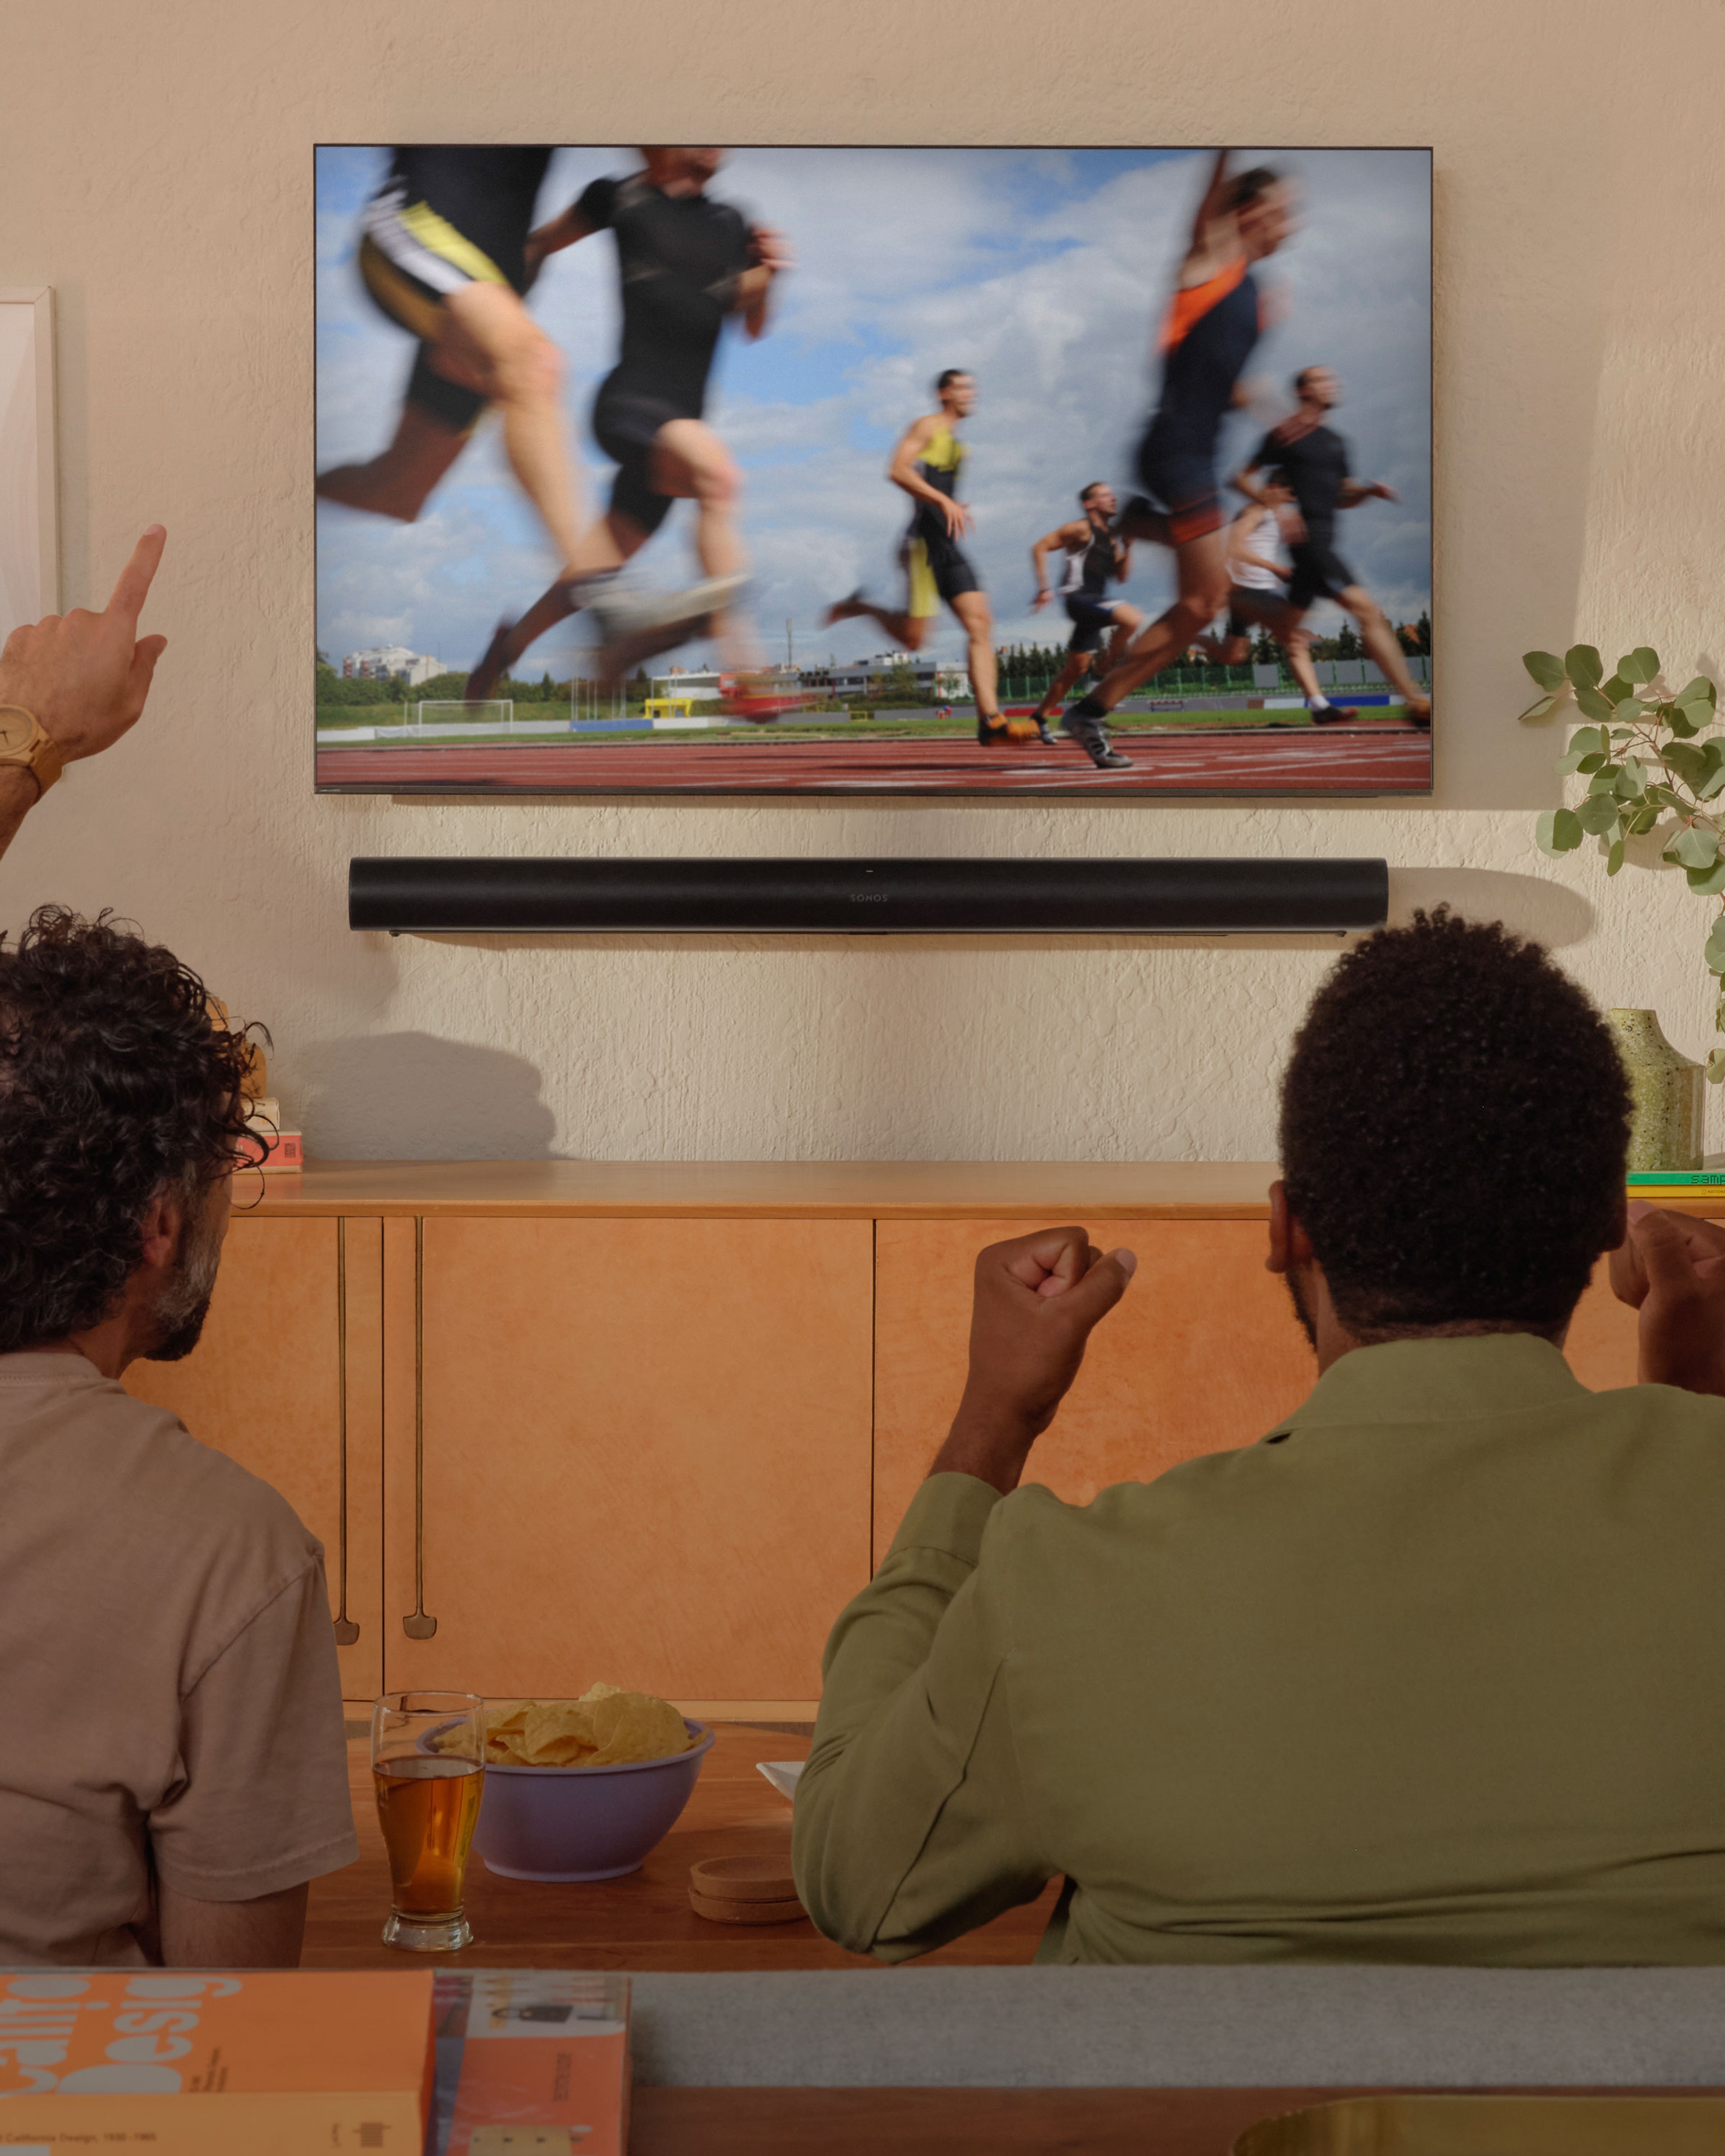 Twee mensen die naar atletiek kijken op een tv met een bevestigde Arc